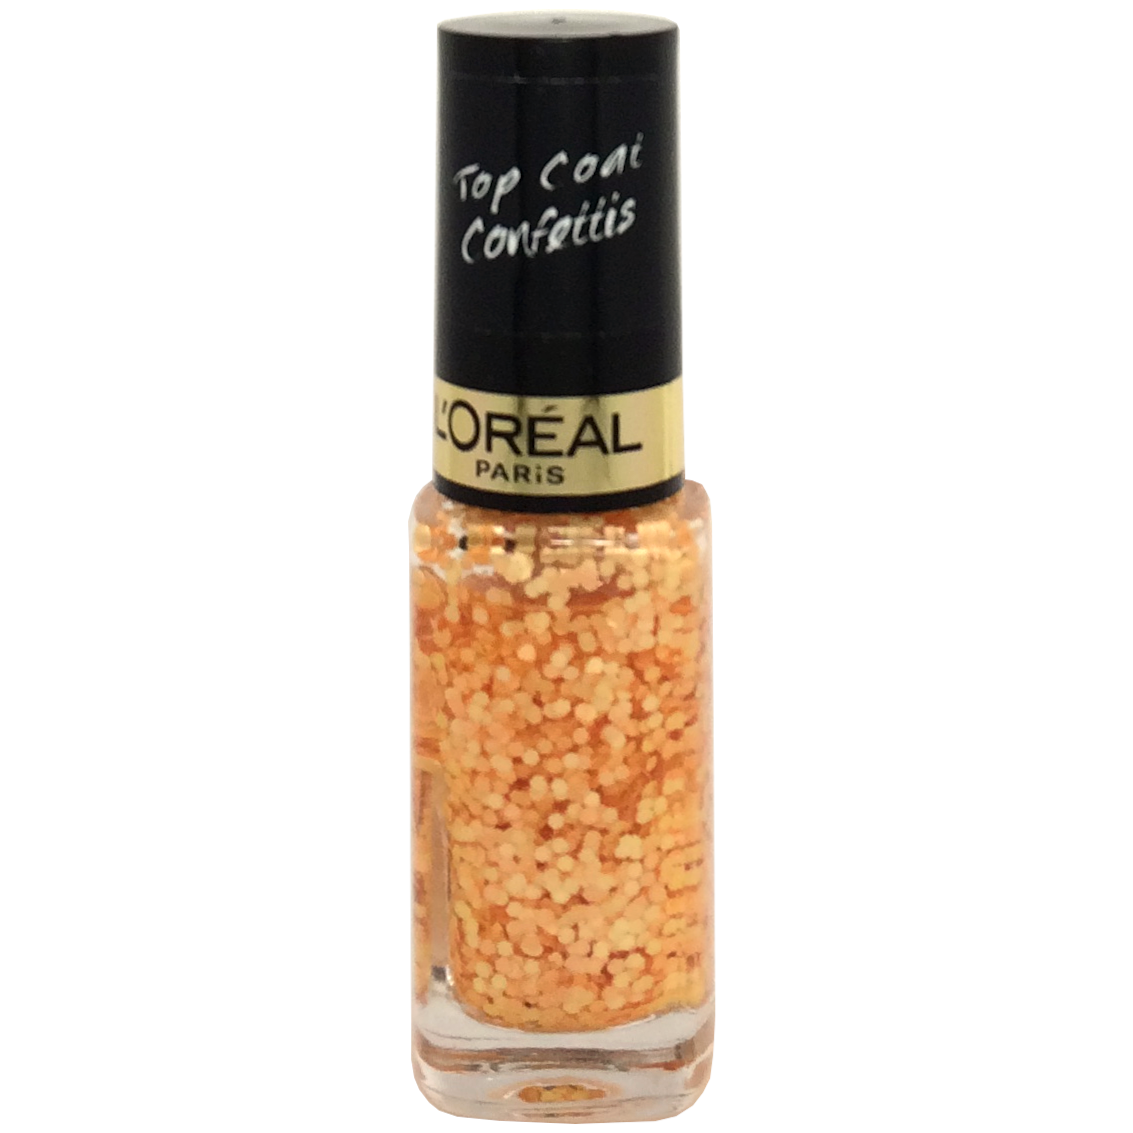 L'oreal Color Riche Nail Polish Top Coat Confetti's - 927 Splash Peach -  £